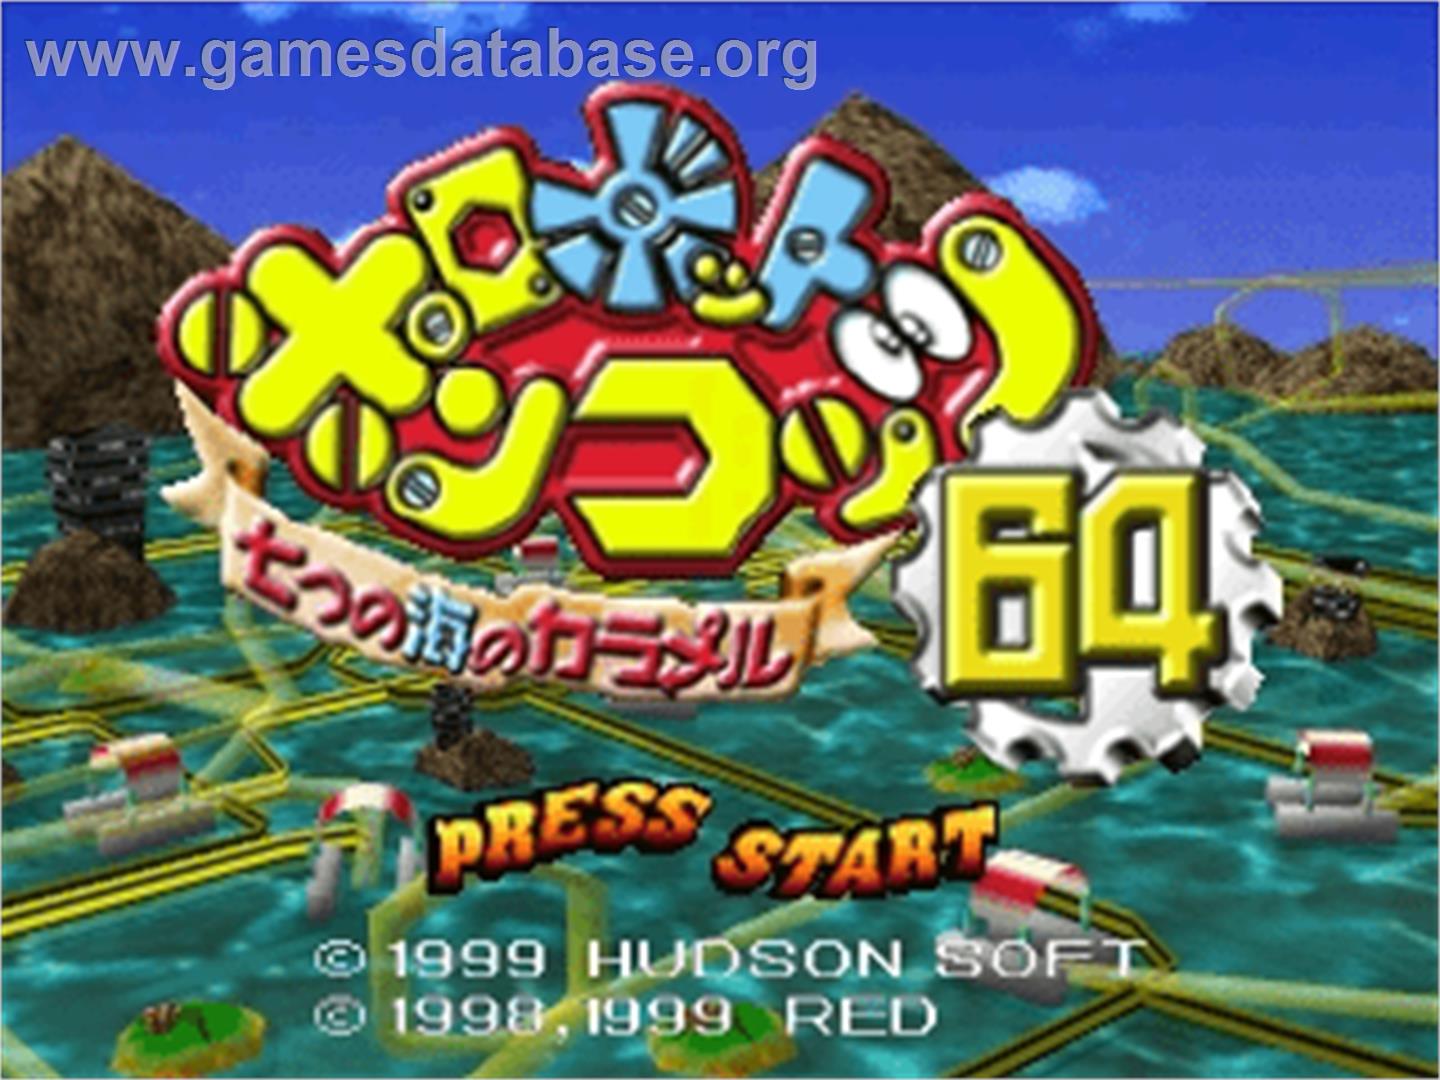 Robot Ponkottsu 64: 7tsu no Umi no Caramel - Nintendo N64 - Artwork - Title Screen